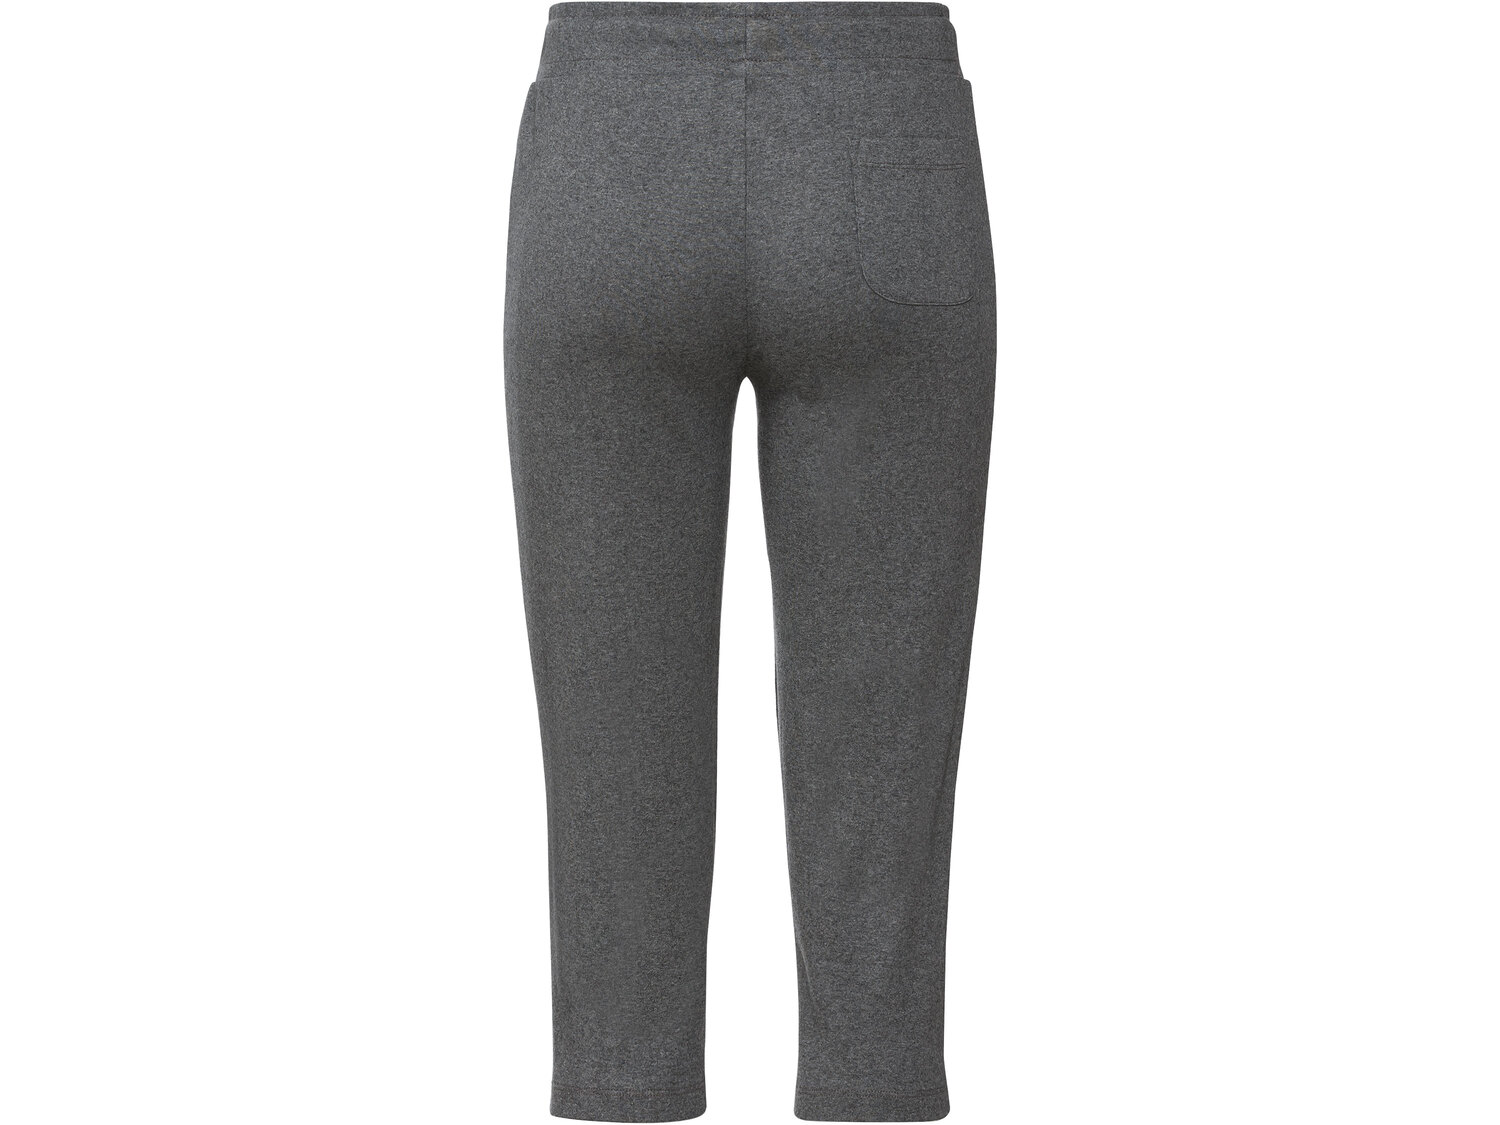 Spodnie damskie 3/4 z bawełny Esmara, cena 24,99 PLN 
- rozmiary: S-L
- 100% bawełny
Dostępne ...